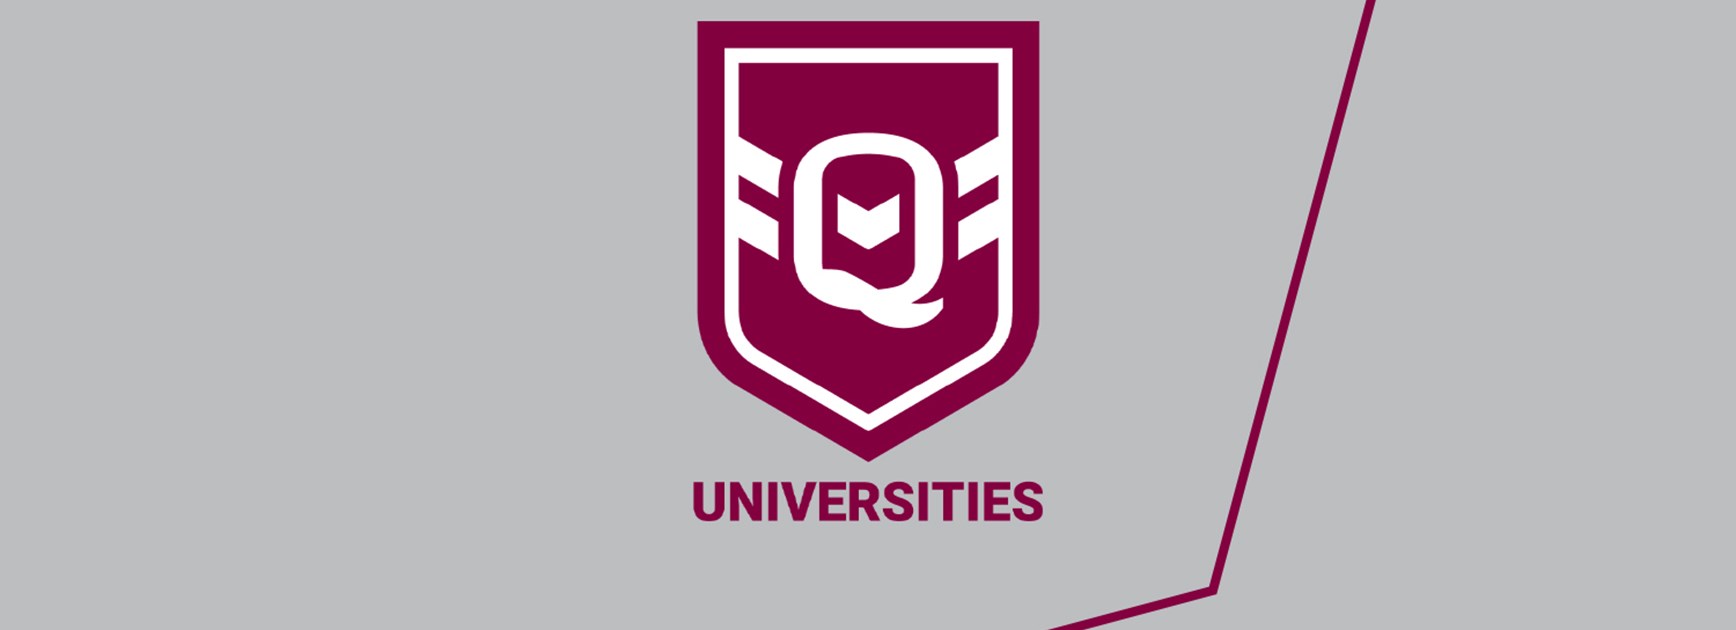 Queensland Universities selection team named